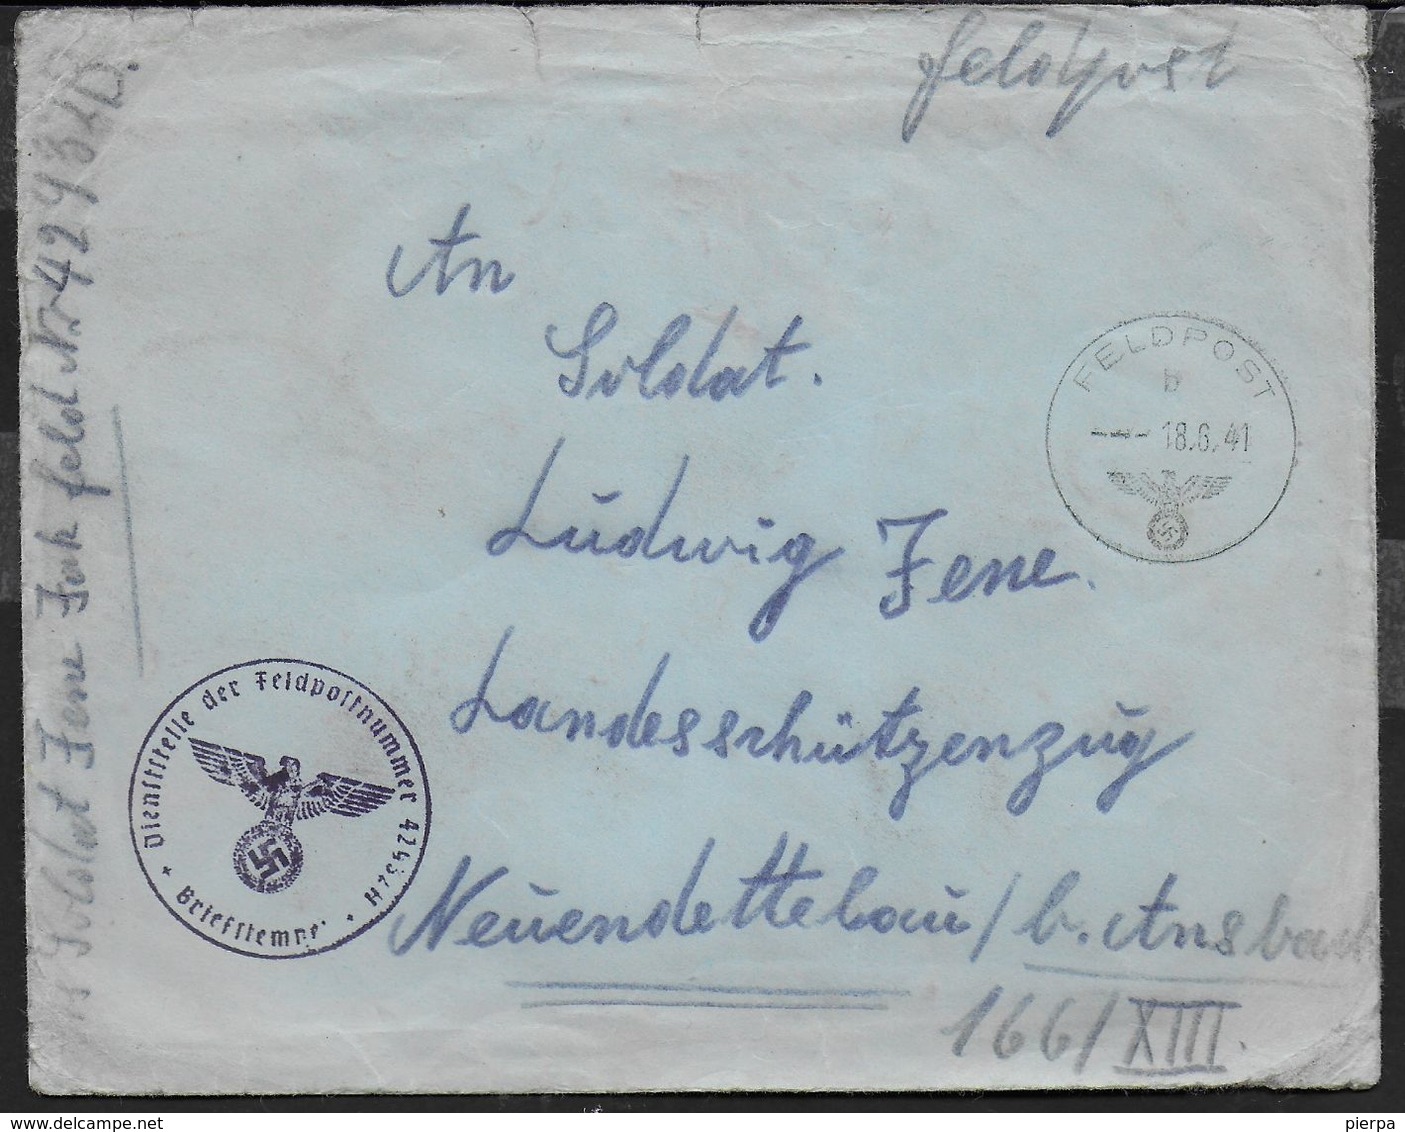 POSTA MILITARE IN FRANCHIGIA - FELDPOST B -18.06.1941 - ANNULLO DIENSTSTELLE DER FELDPOSTNUMMER 42932H - Lettres & Documents